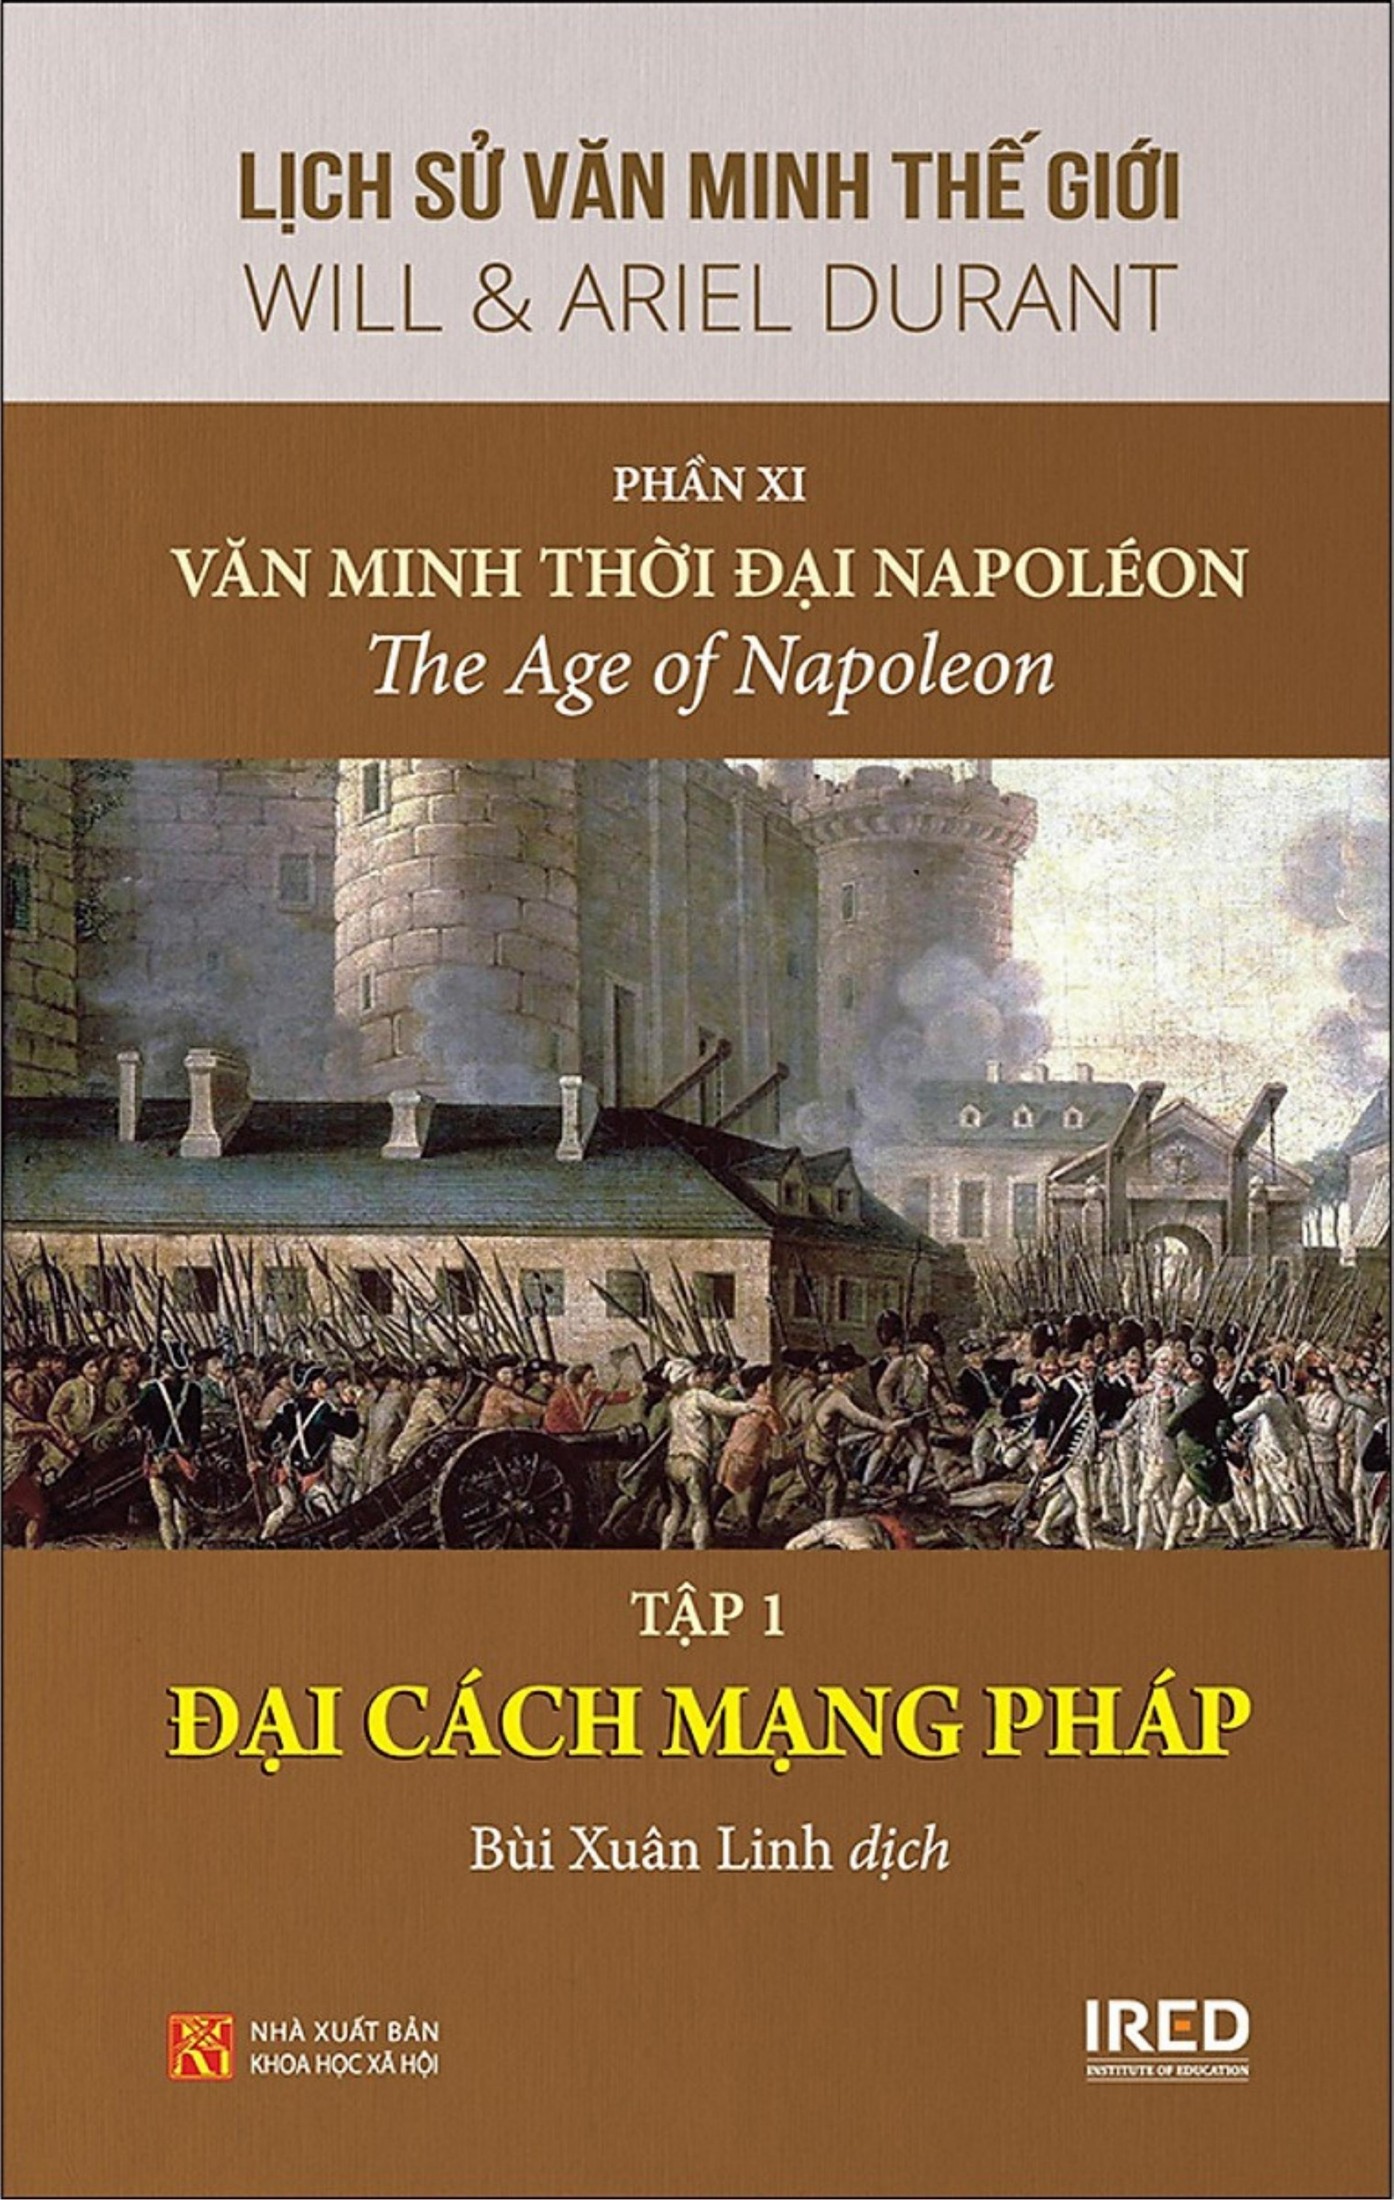 Lịch Sử Văn Minh Thế Giới Phần XI: Văn Minh Thời Đại Napoléon (tập 1)